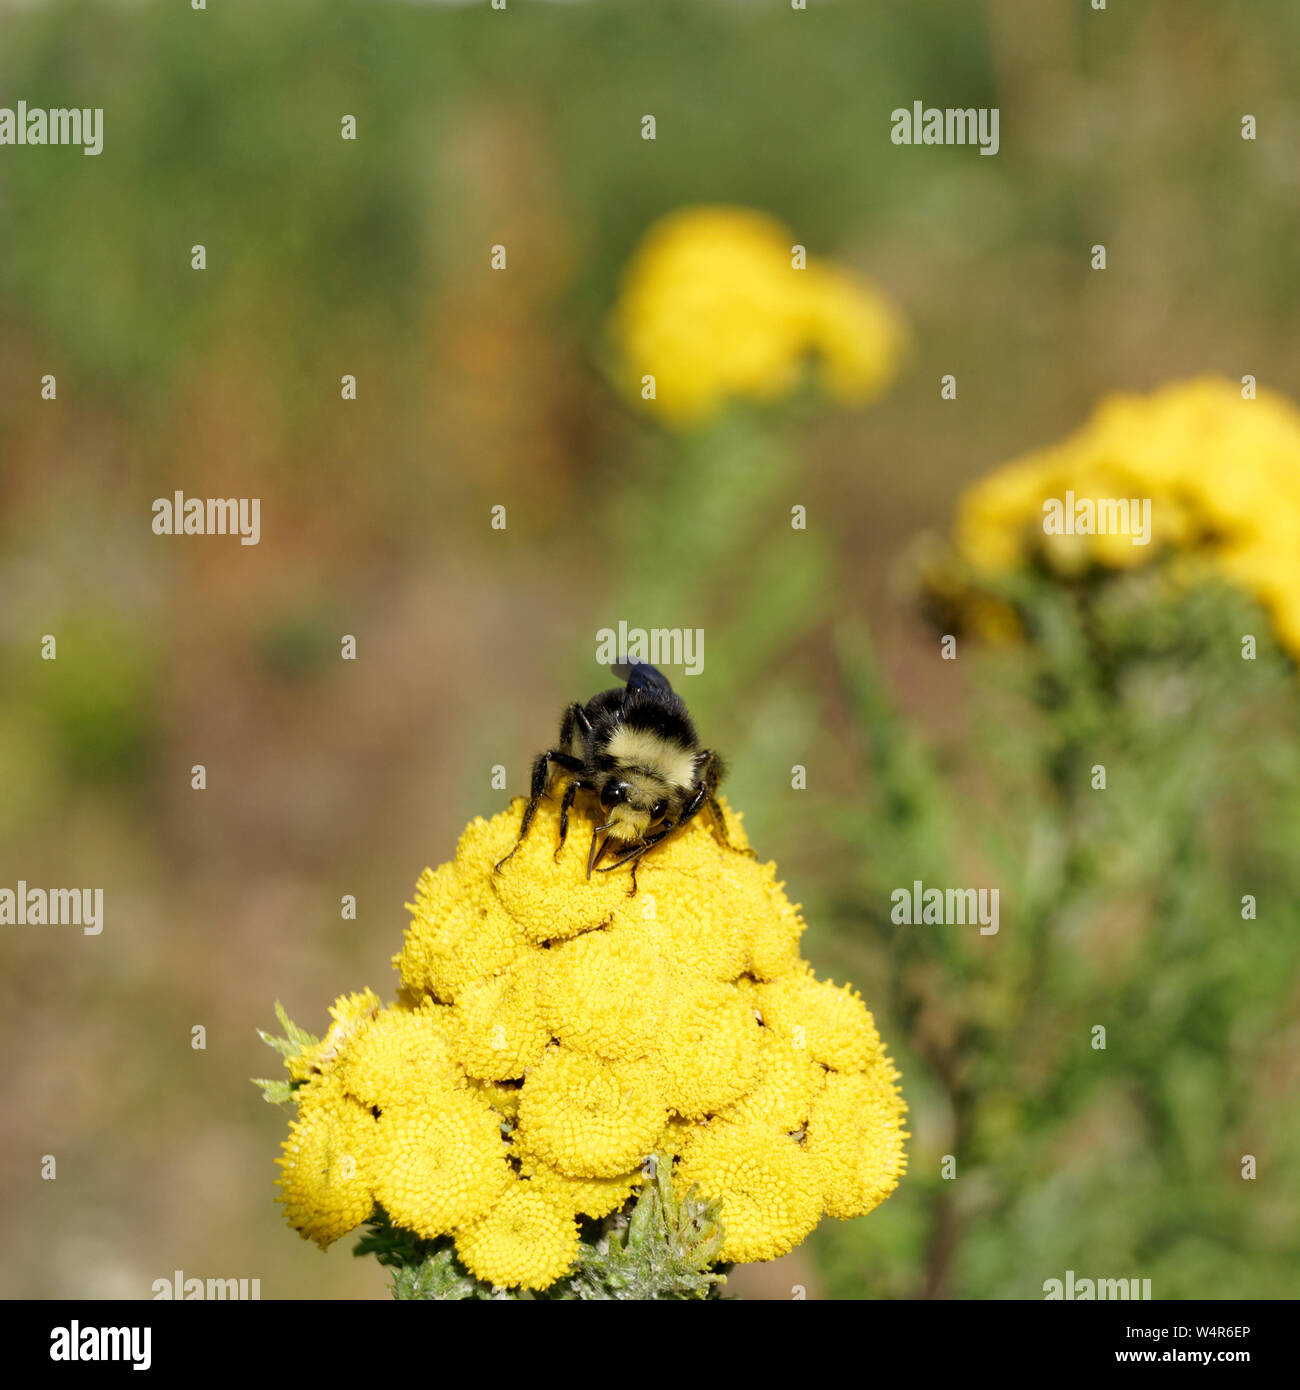 Nahaufnahme von Bumblebee sammeln Pollen auf gemeinsame Rainfarn (Tanacetum vulgare) Blumen, Vancouver, BC, Kanada Stockfoto